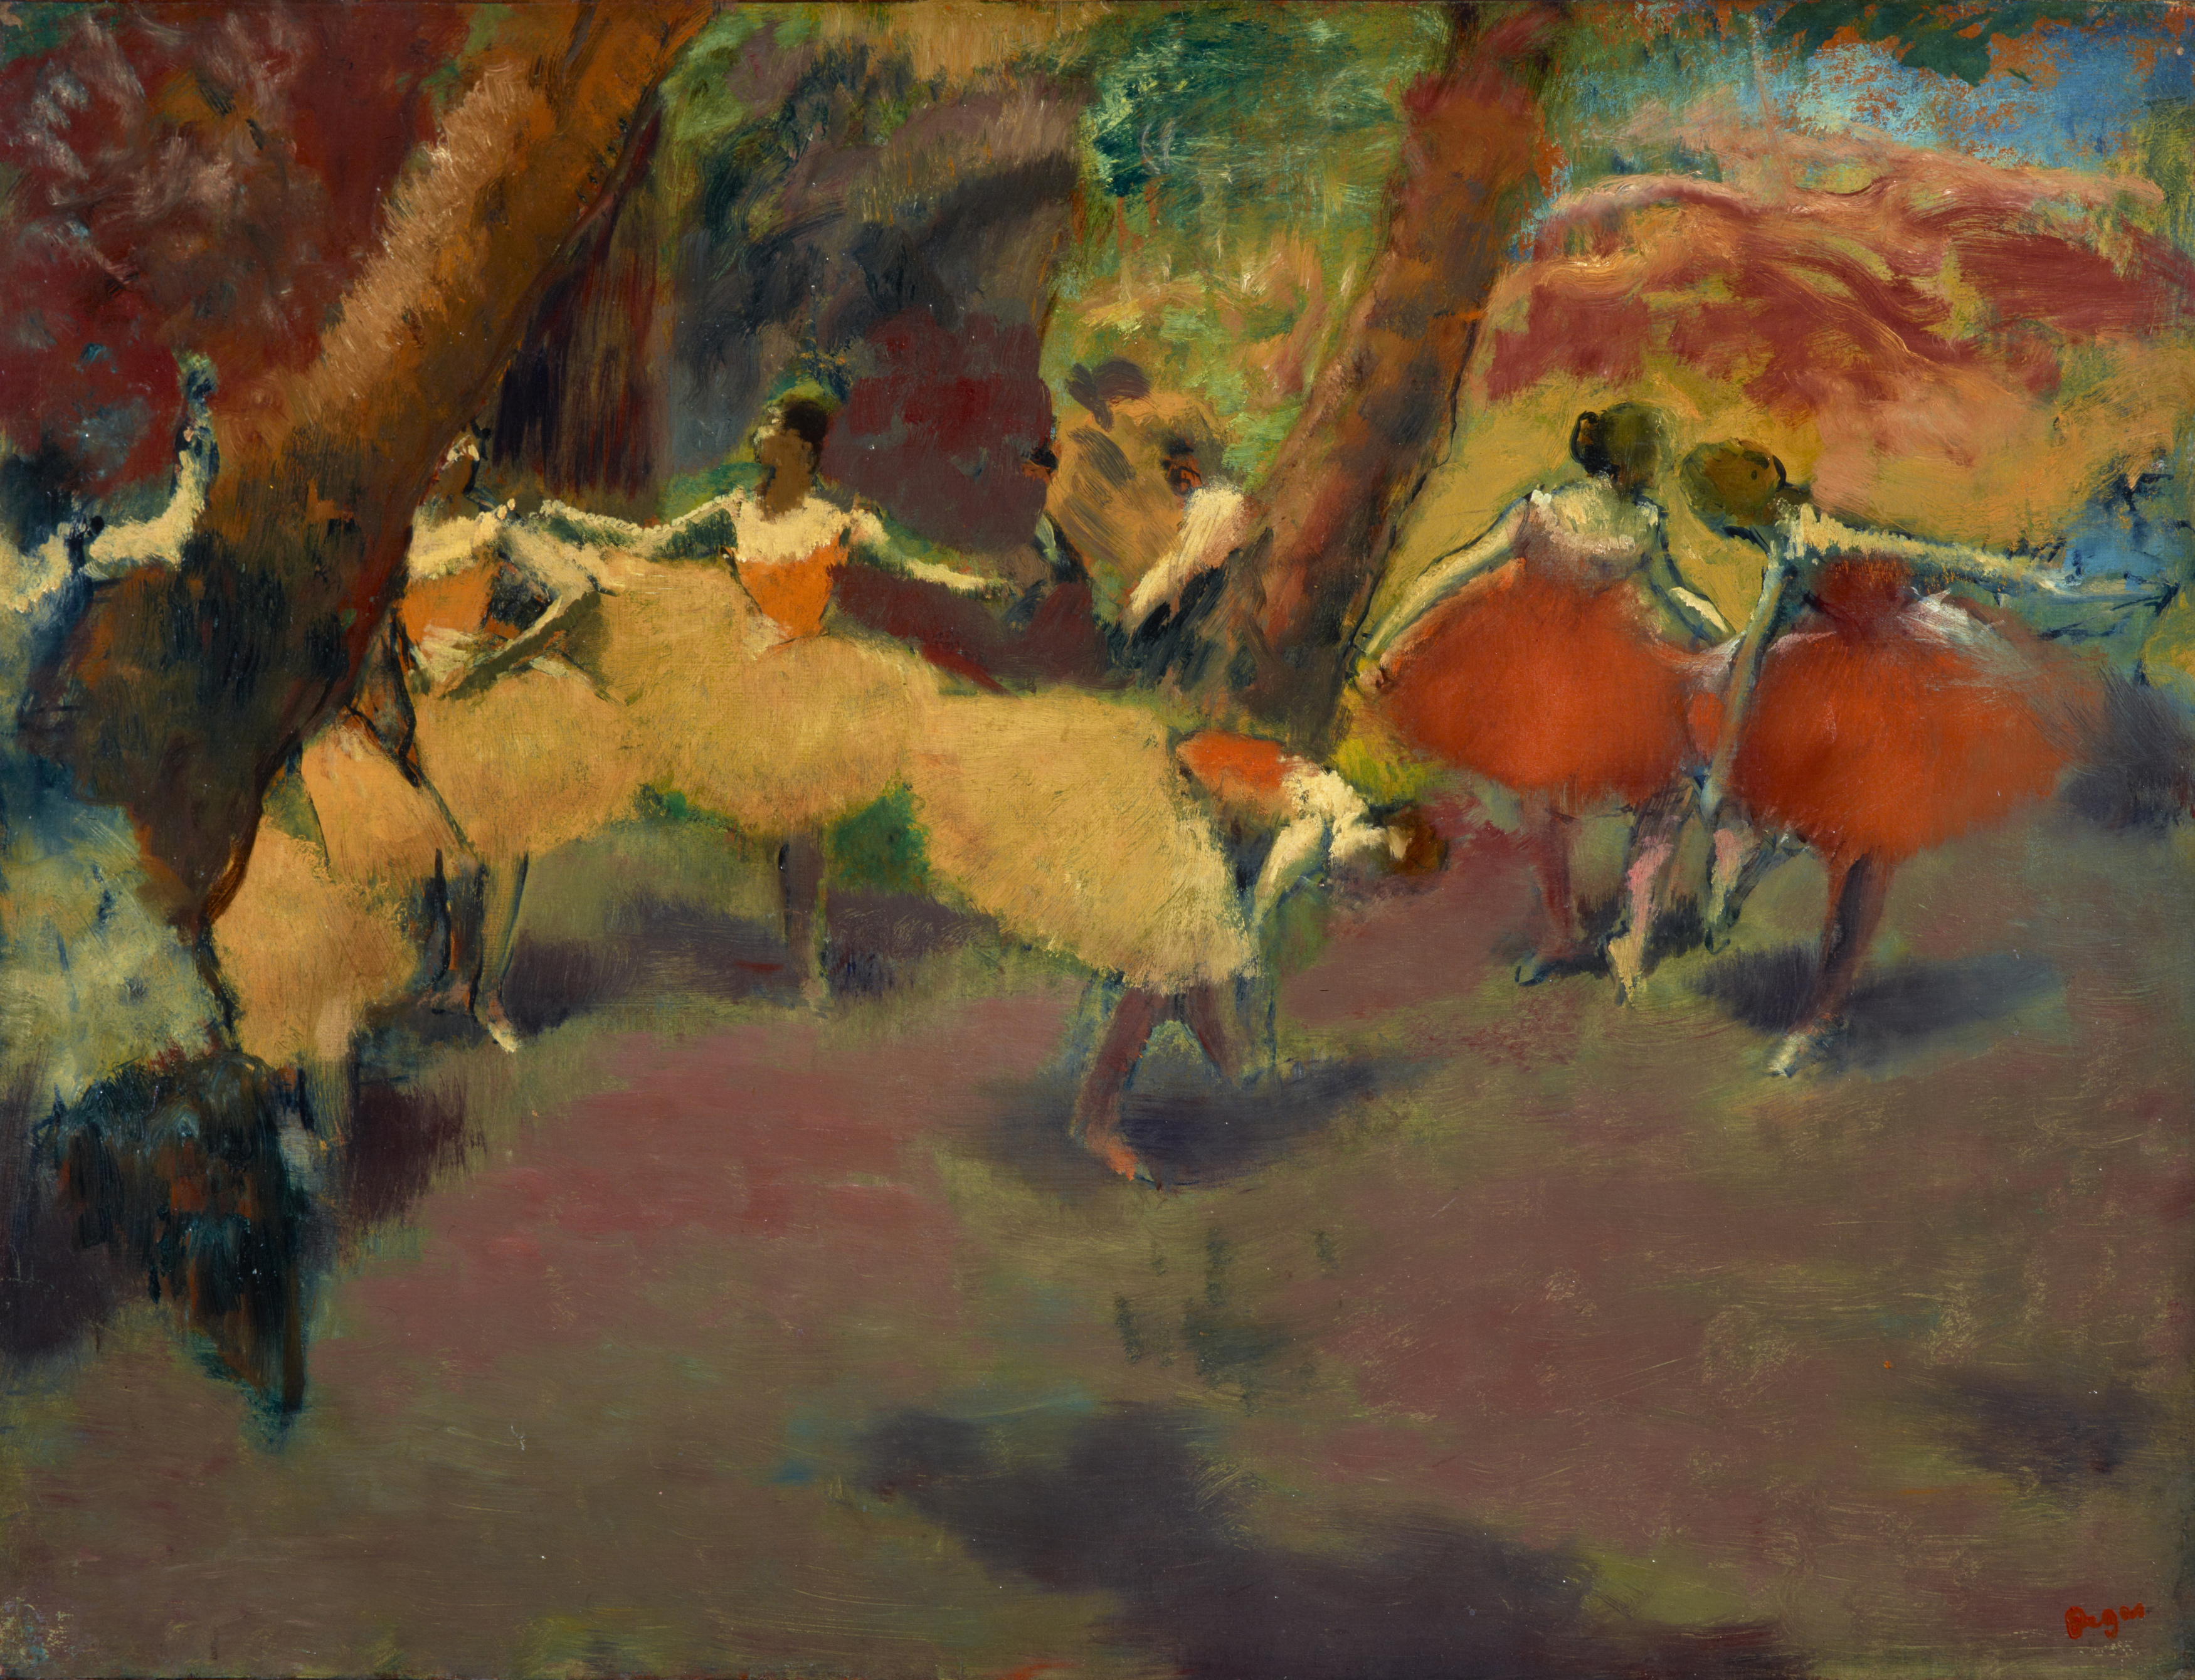 Vor dem Auftritt by Edgar Degas - Etwa 1896 - 1898 - 47,60 x 62,50 cm National Galleries of Scotland